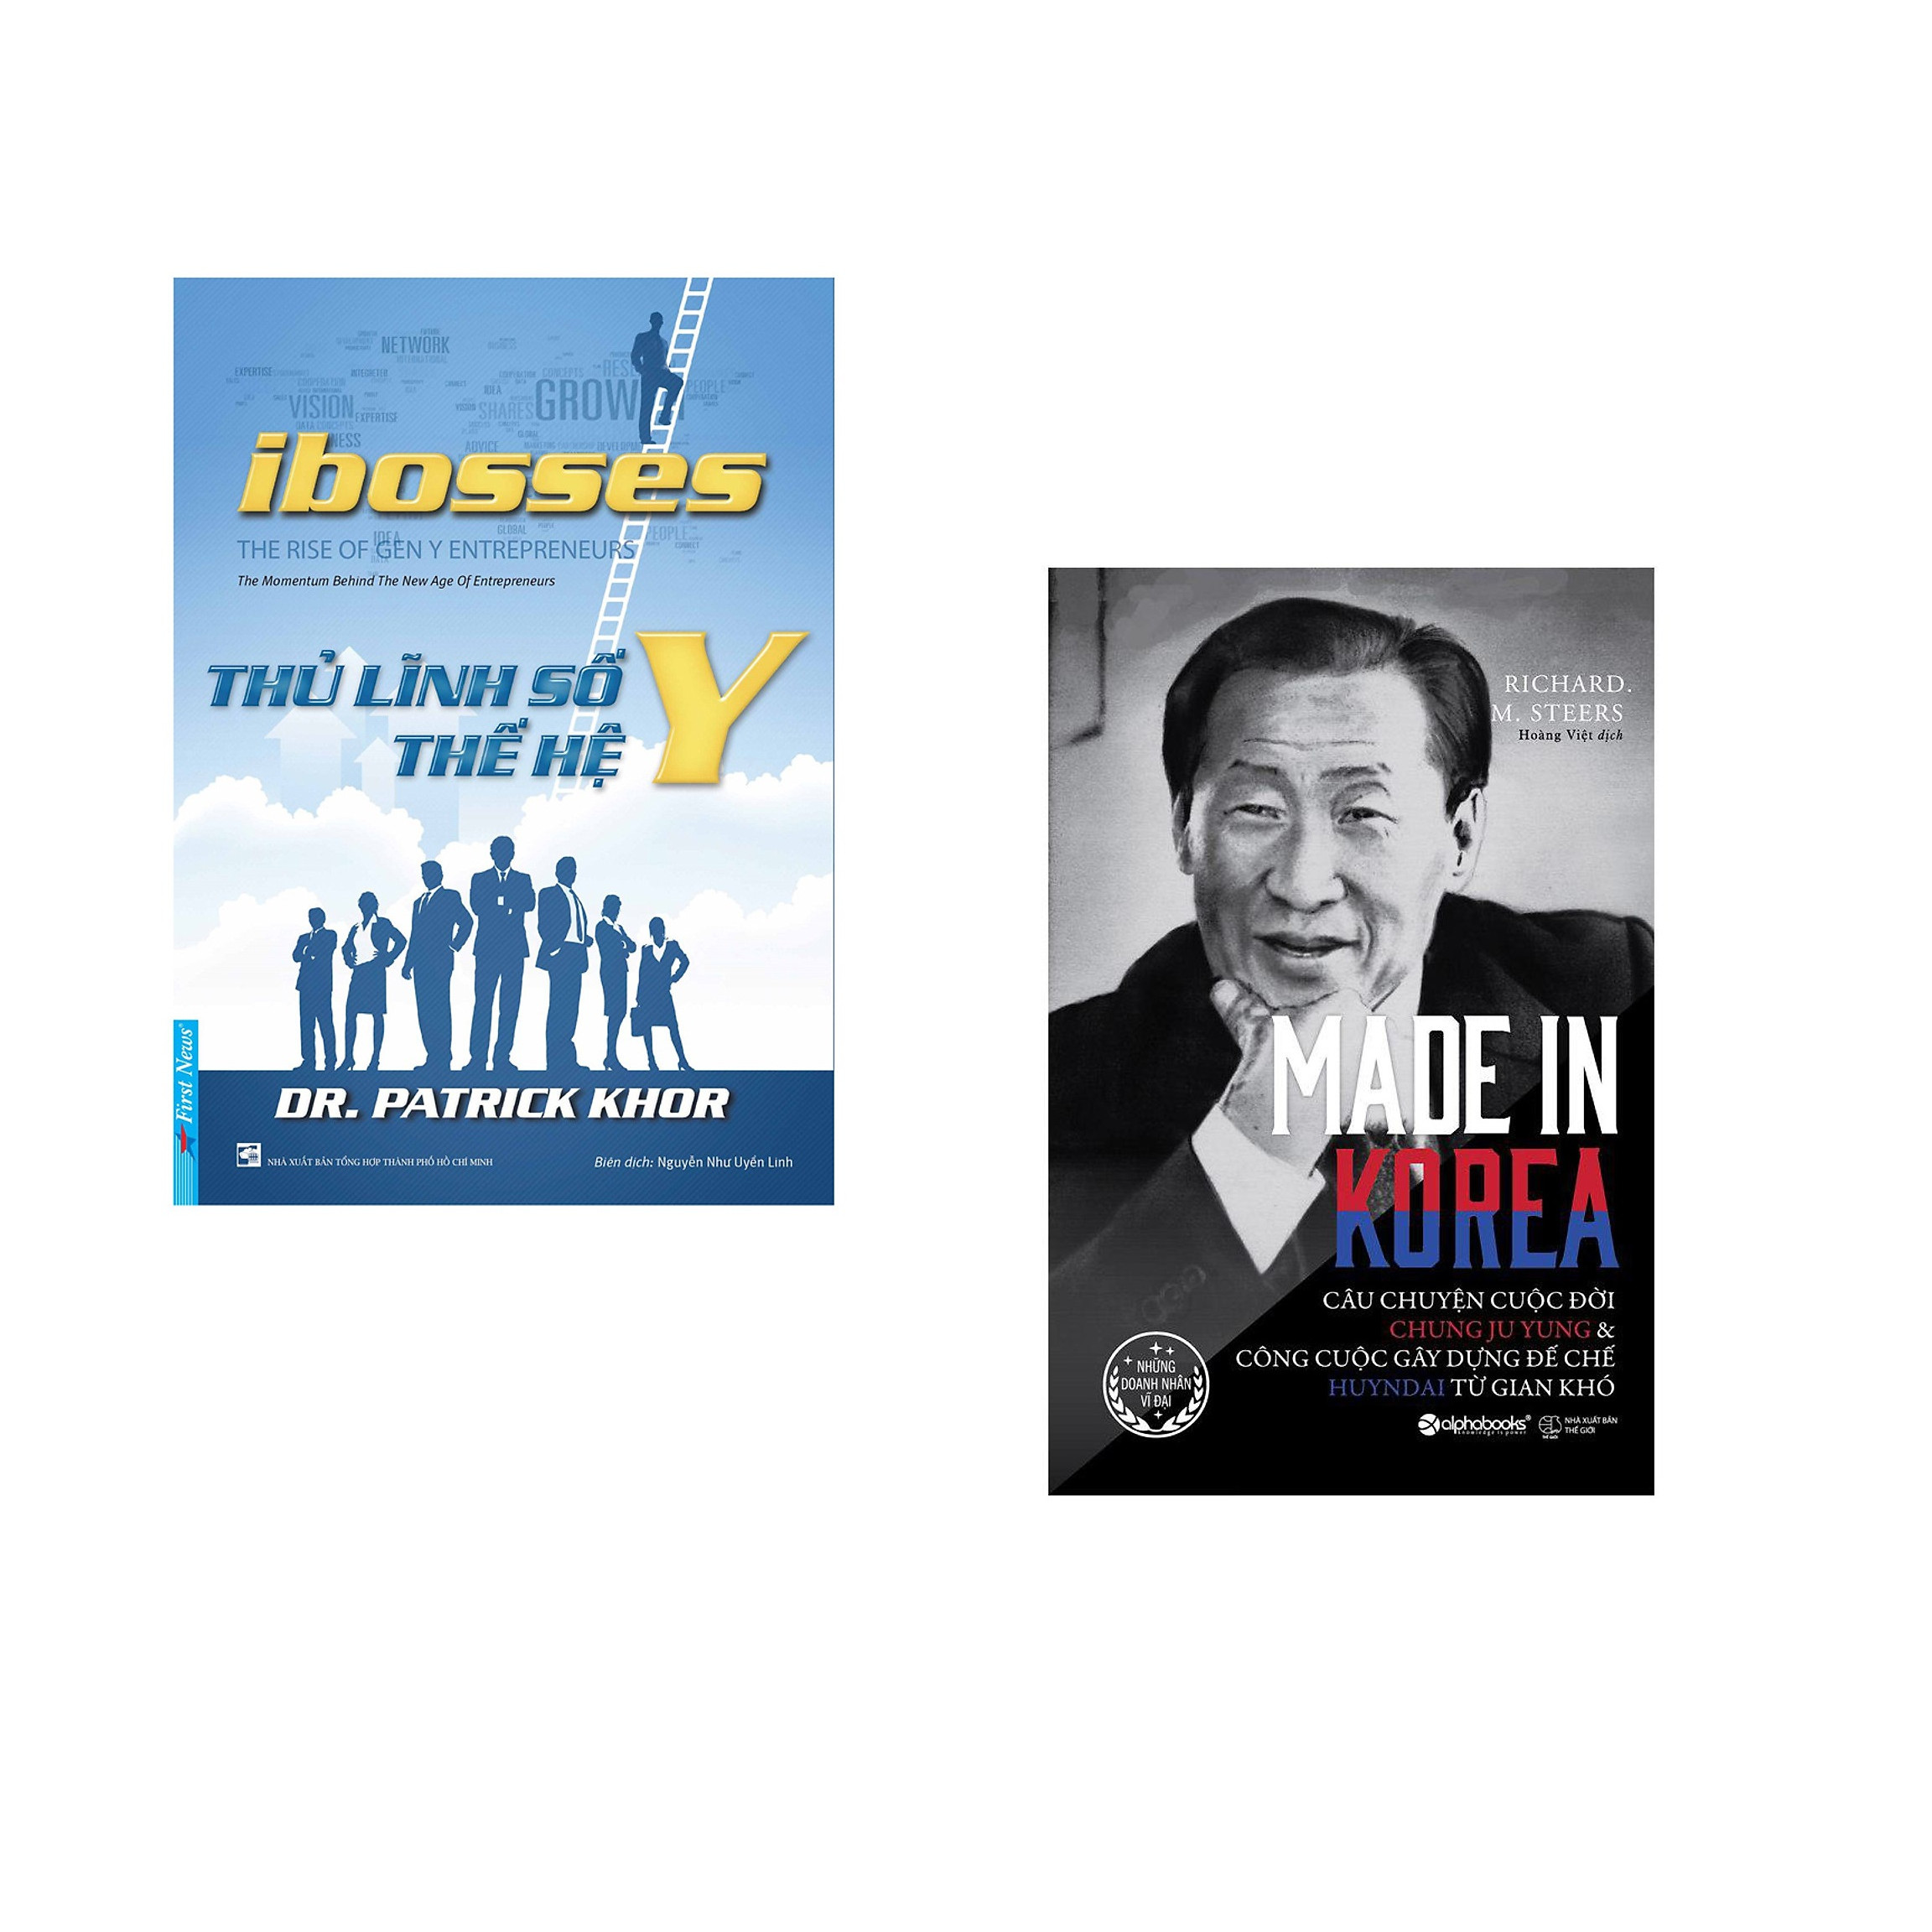 Combo 2 cuốn sách: Ibosses - Thủ Lĩnh Số Thế Hệ Y + Made in korea-câu chuyện cuộc đời Chung Ju Yung